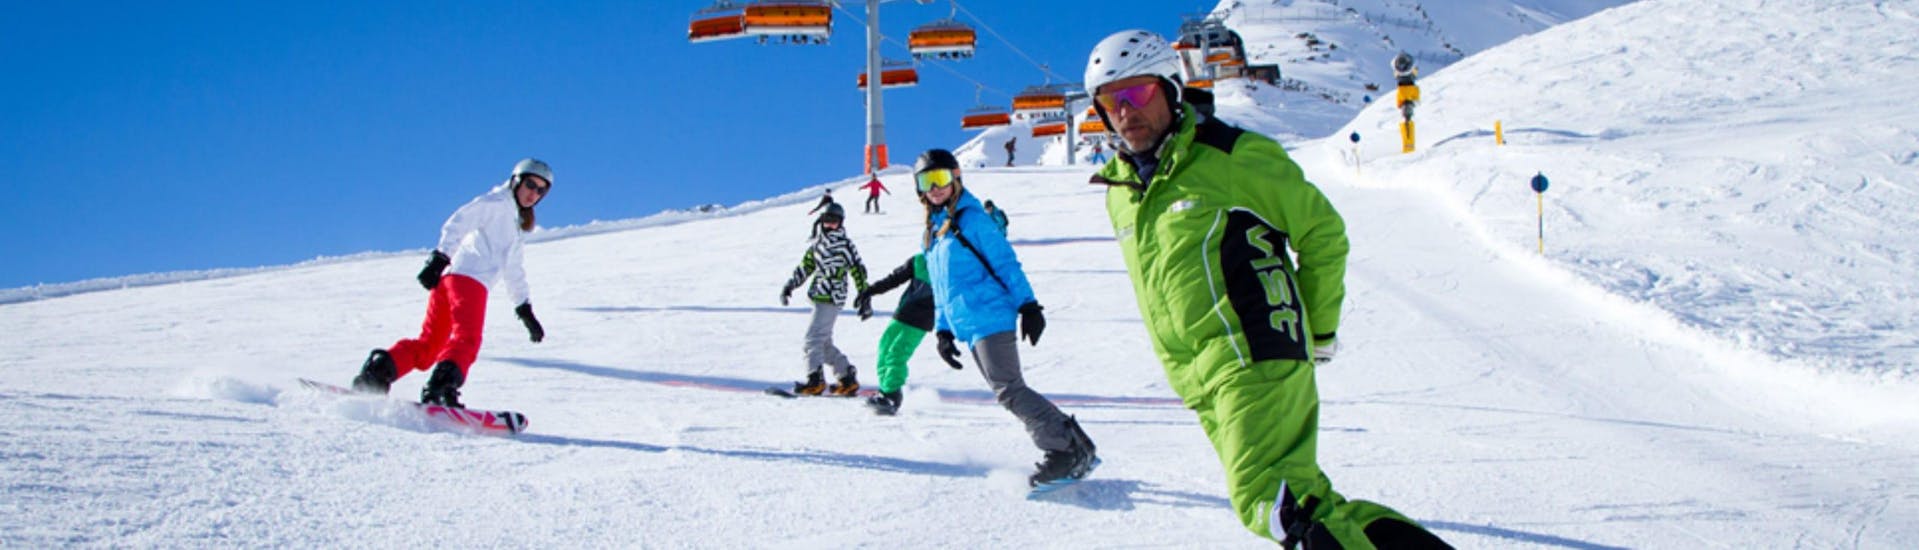 Privélessen snowboarden voor kinderen en volwassenen.